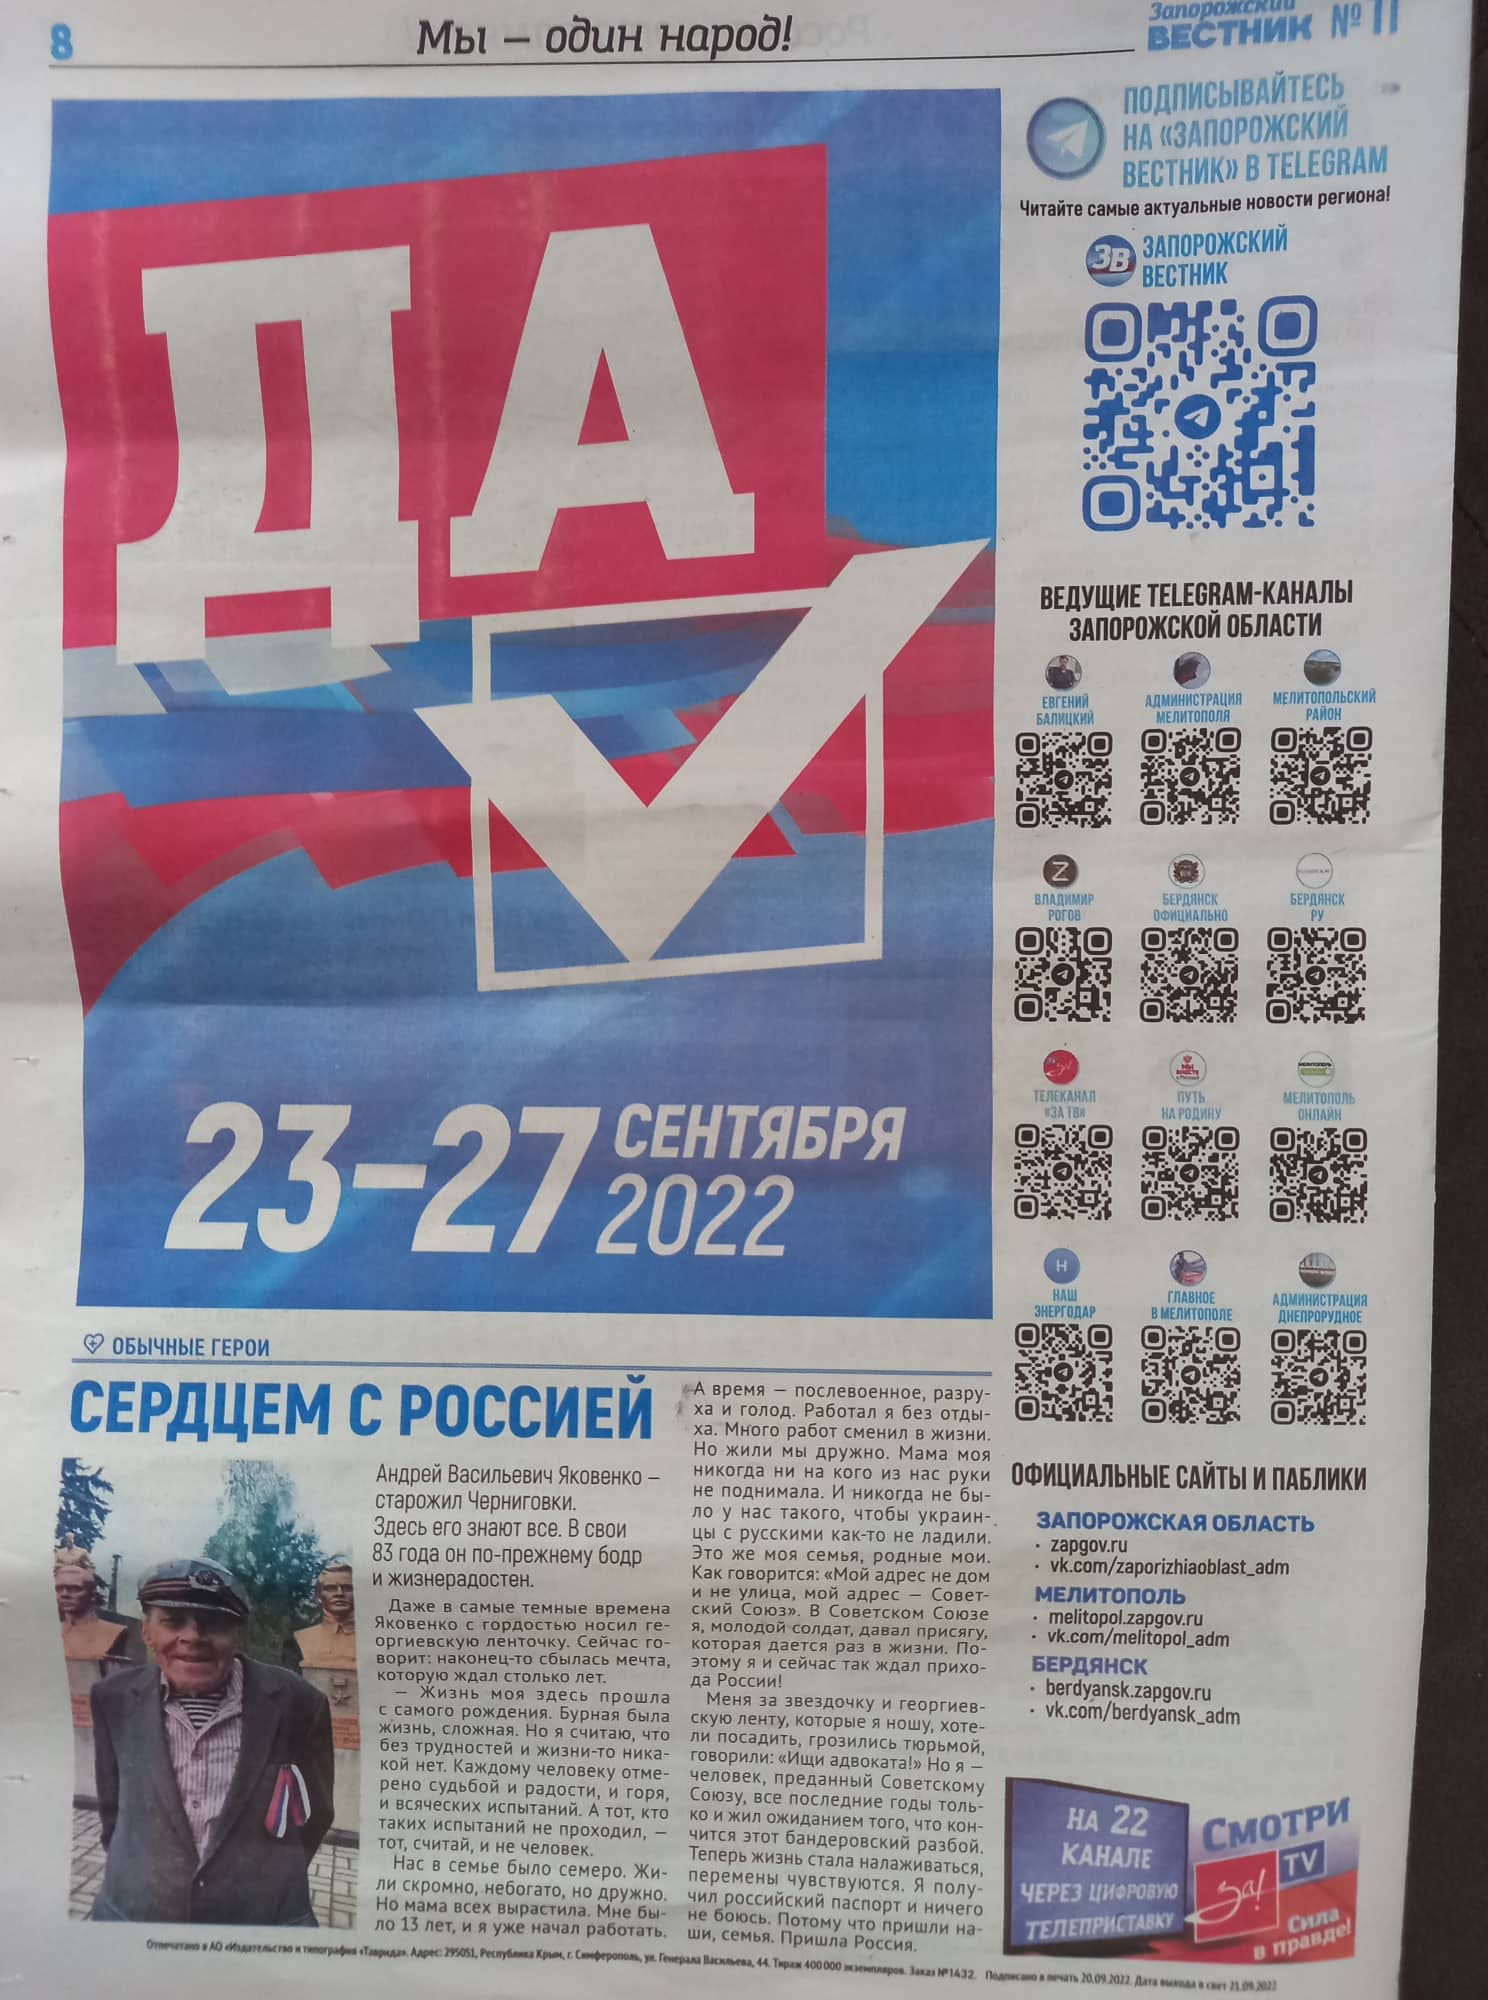 Сторінка з пропагандистської газети, на якій зазначено про дати референдуму: 23-27 вересня.